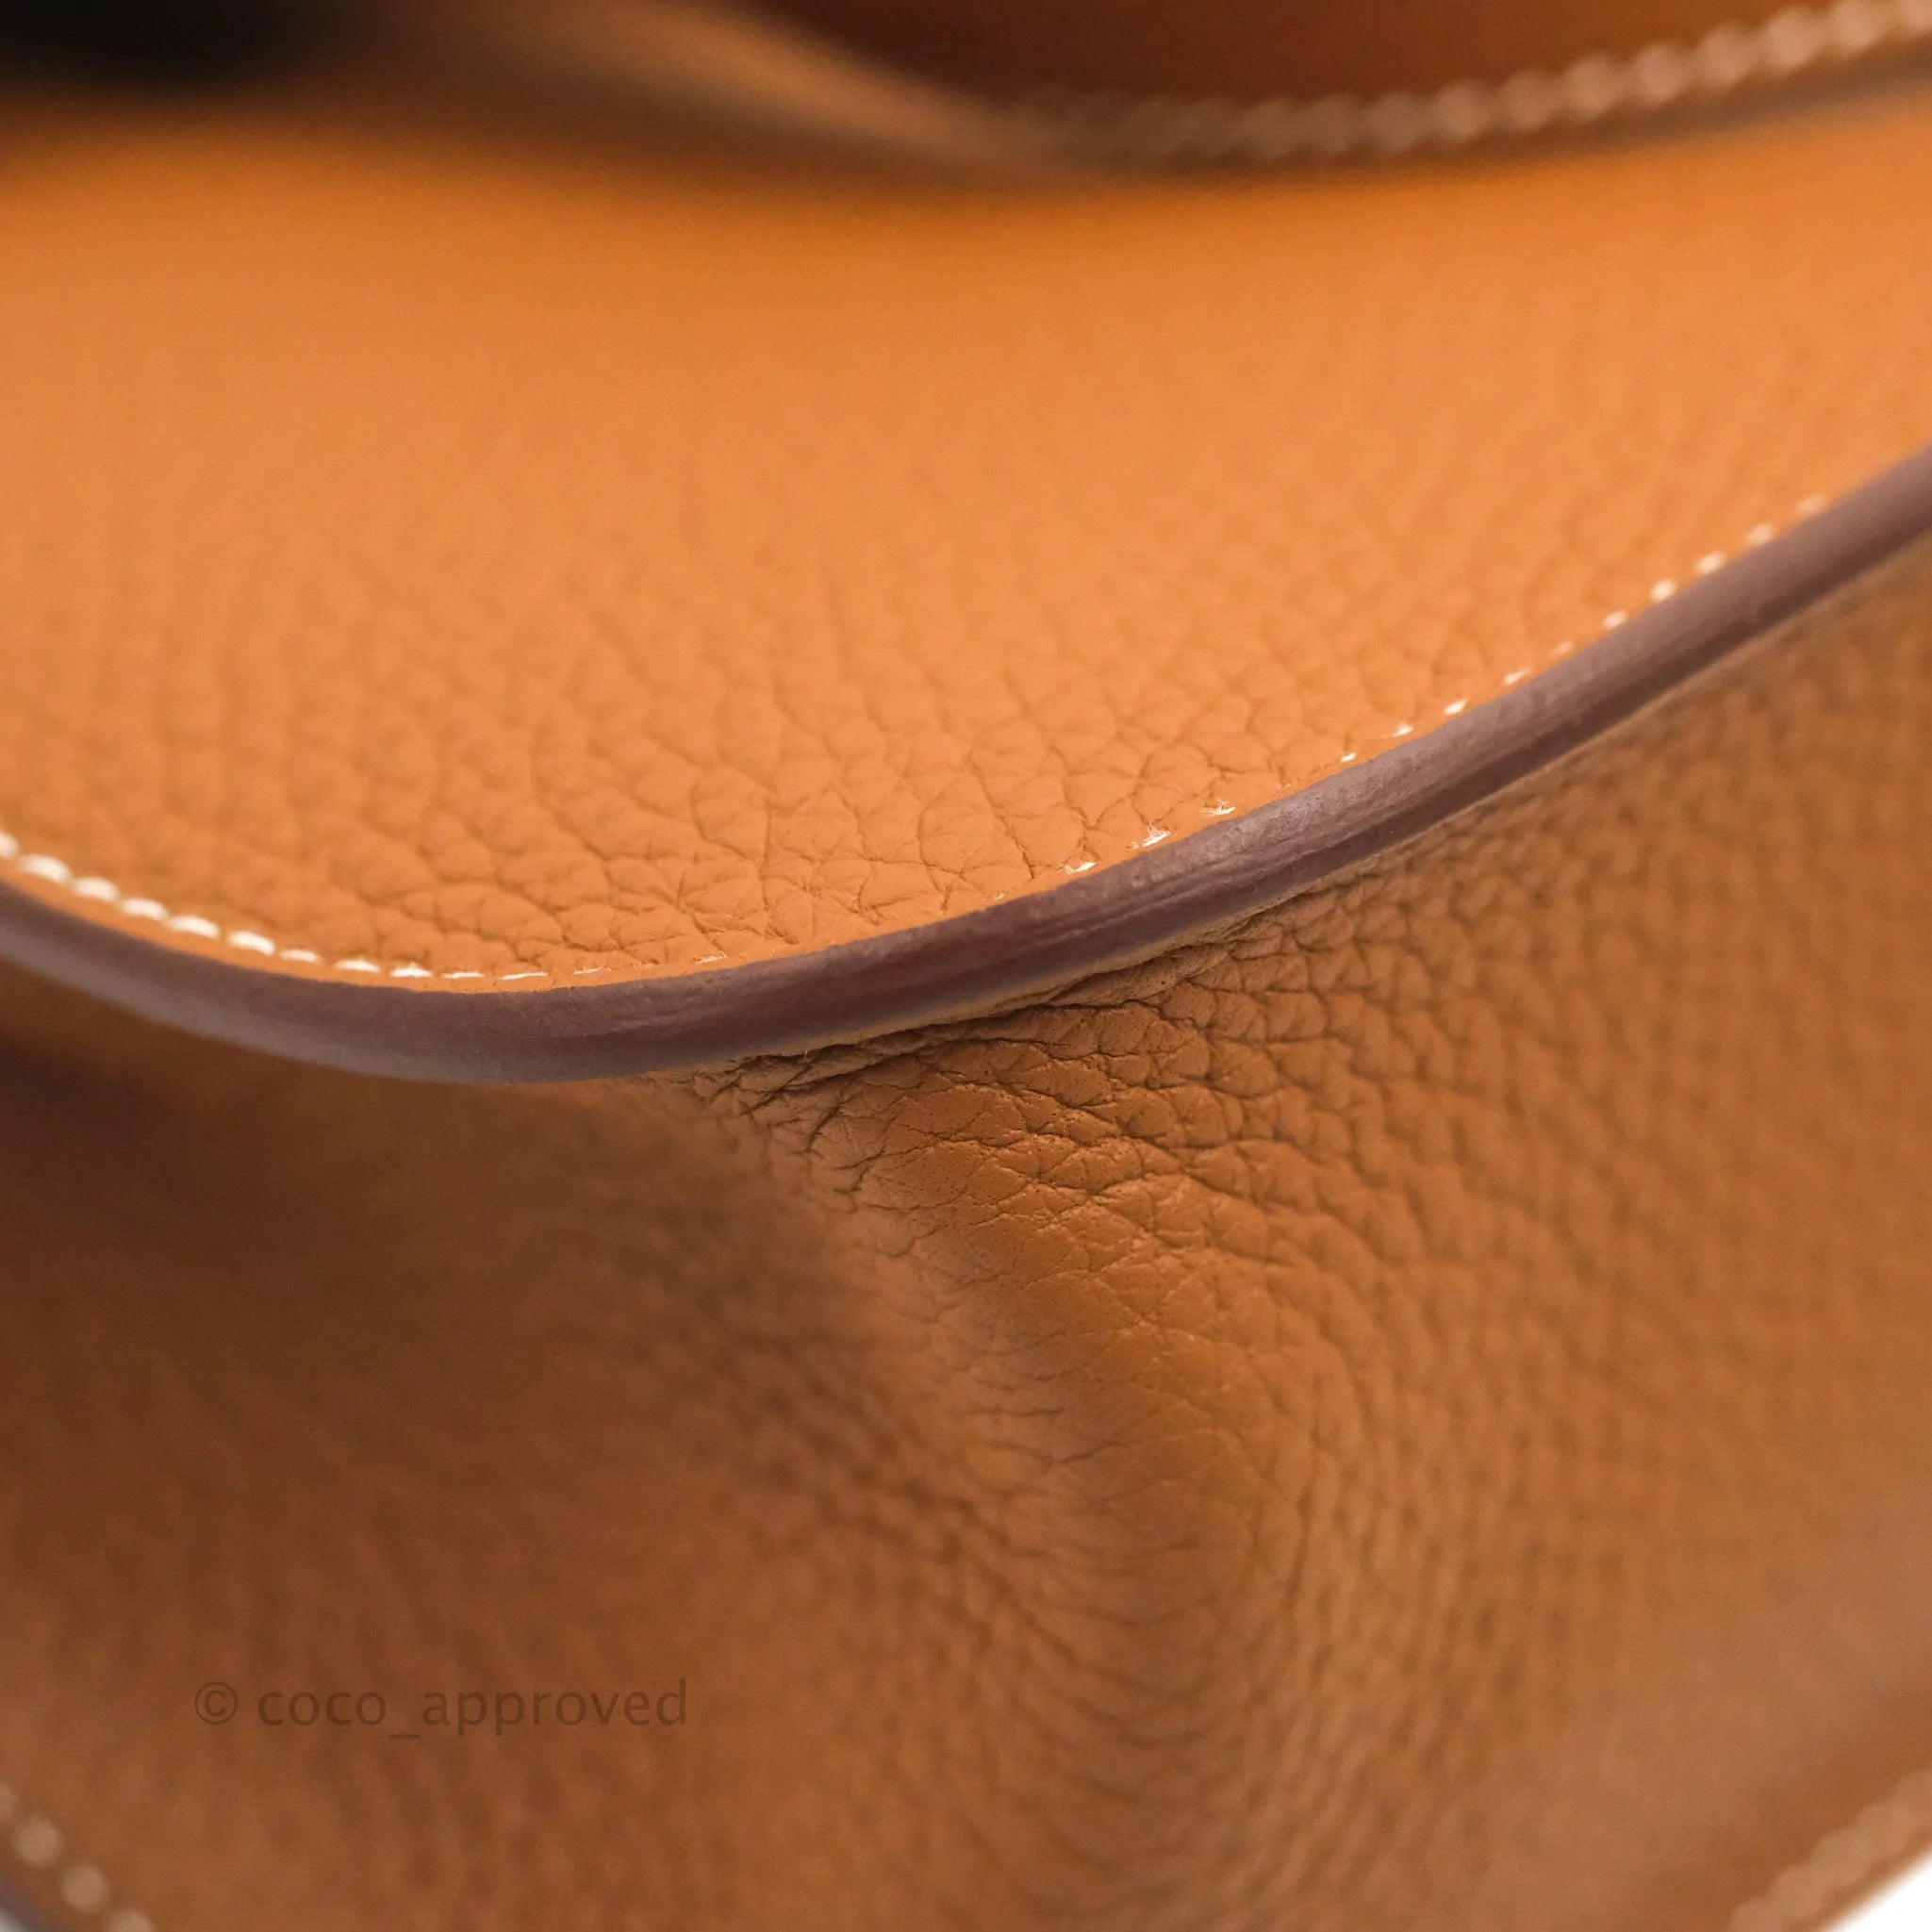 Hermes Halzan 25 Etoupe Bag Gold Hardware Clemence Leather – Mightychic